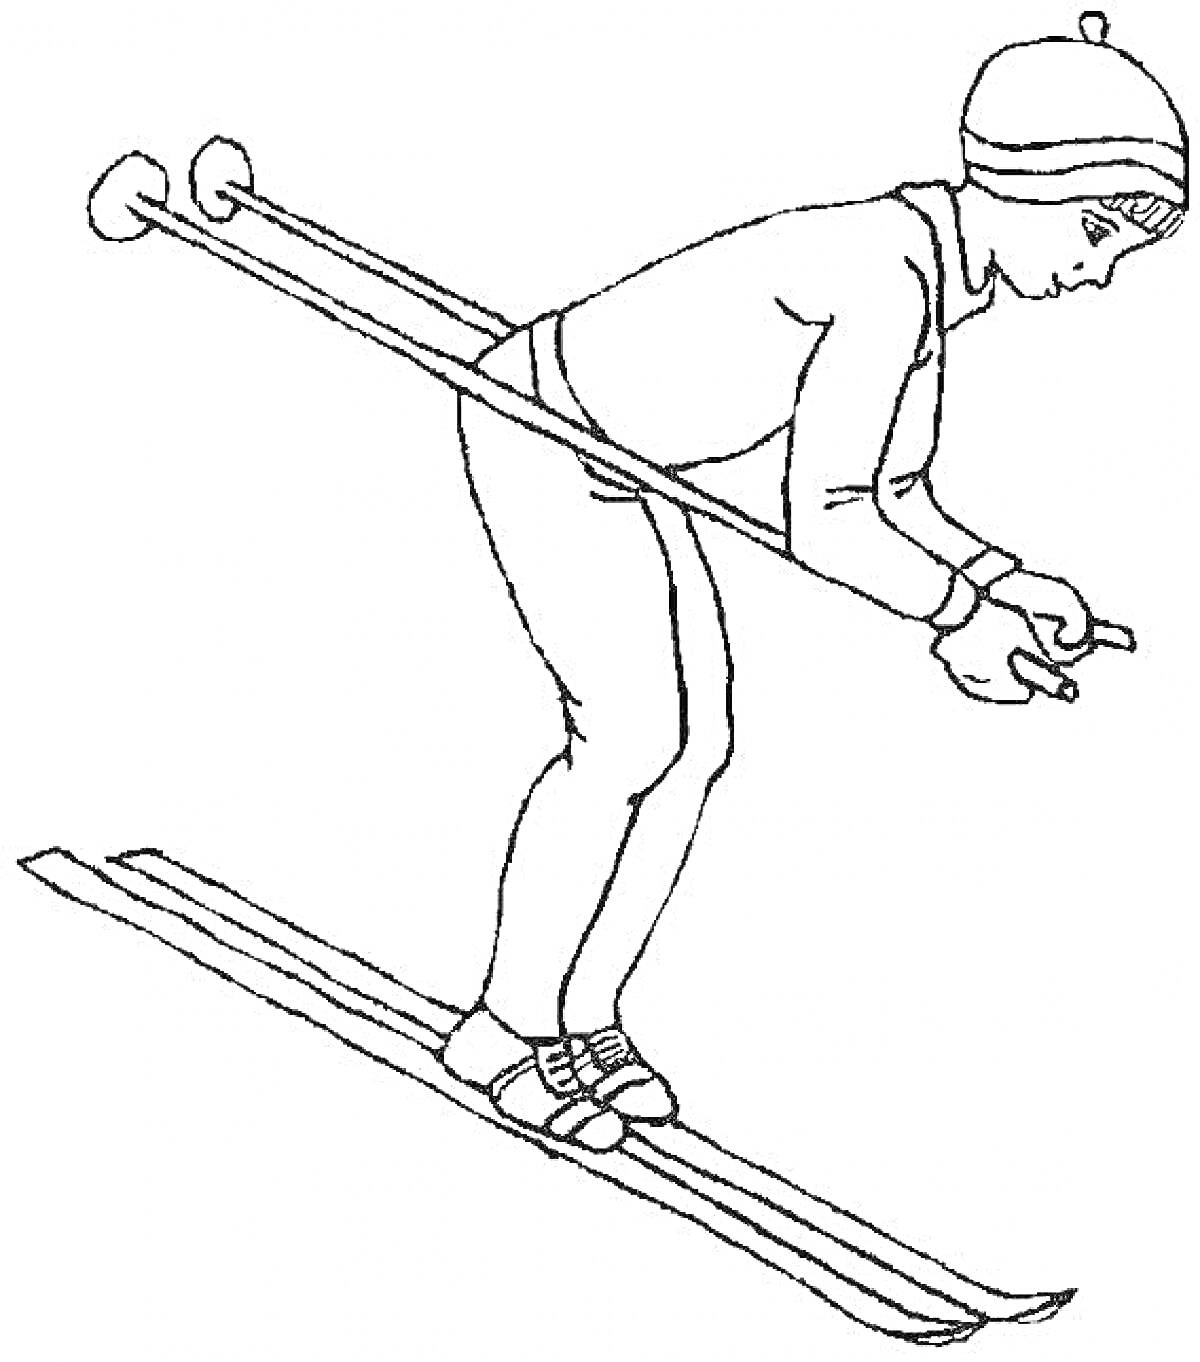 Раскраска Лыжник в шапке и одежде для зимнего спорта, в момент спуска со склона с лыжными палками в руках.